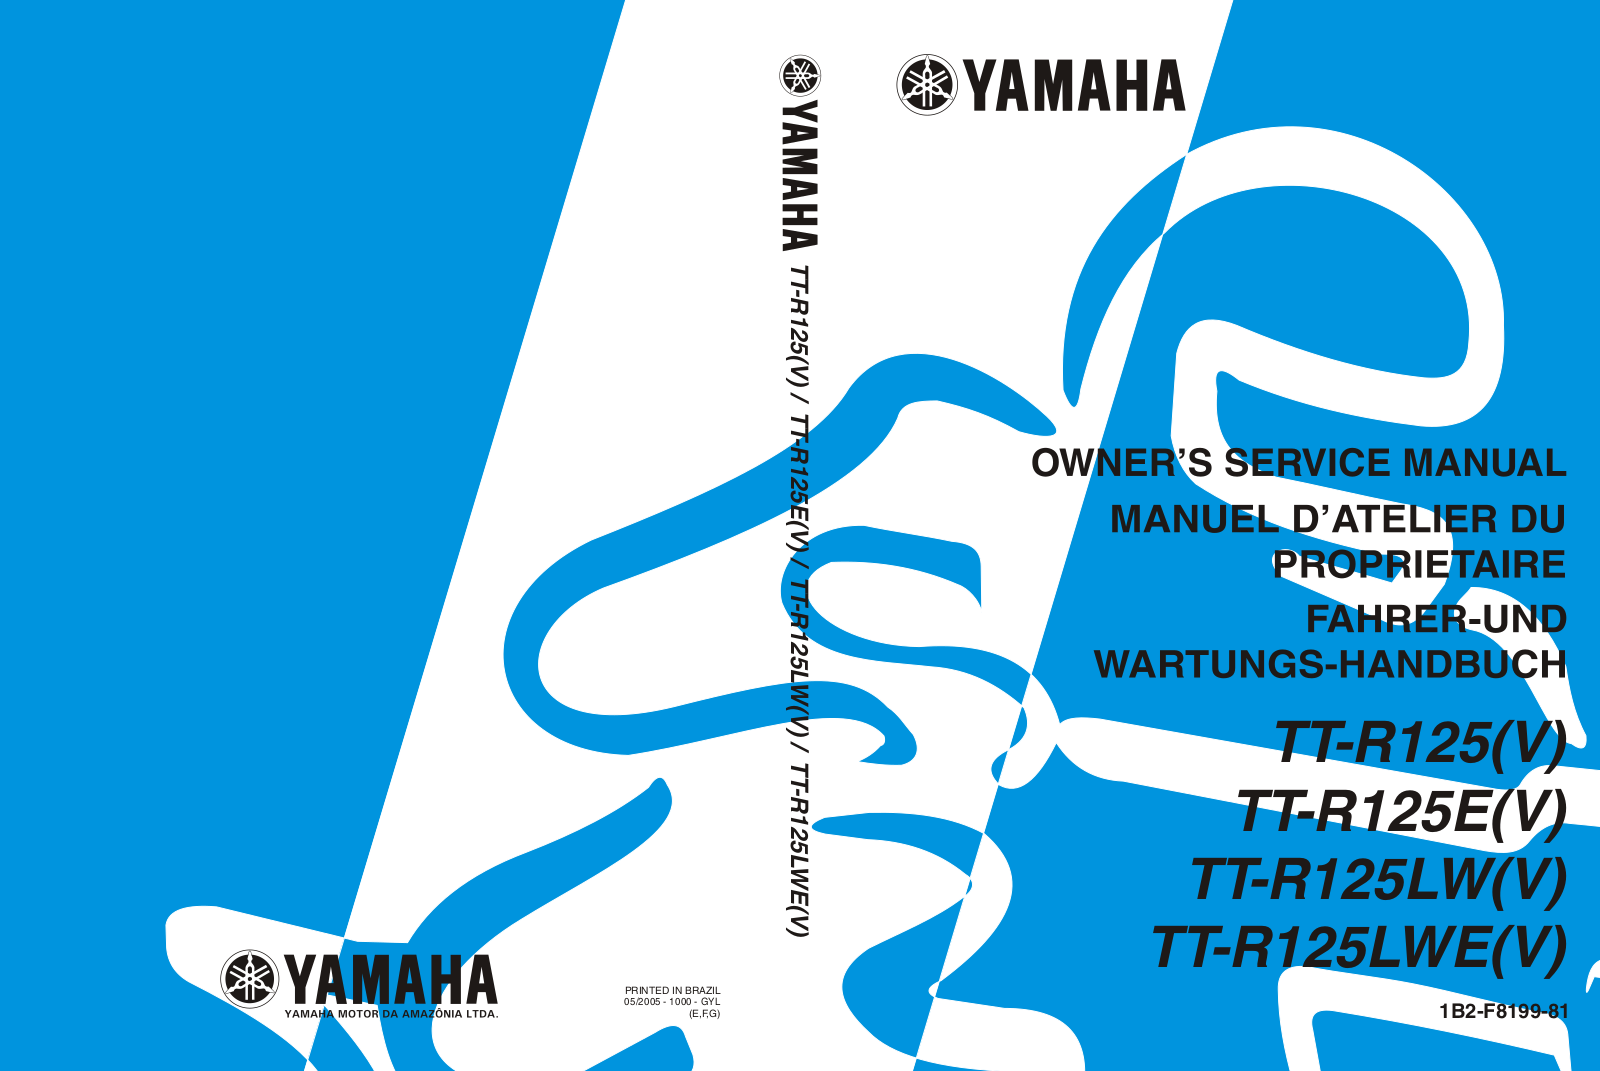 Yamaha TT-R125(V), TT-R125E(V), TT-R125LW(V), TT-R125LWE(V) Manual